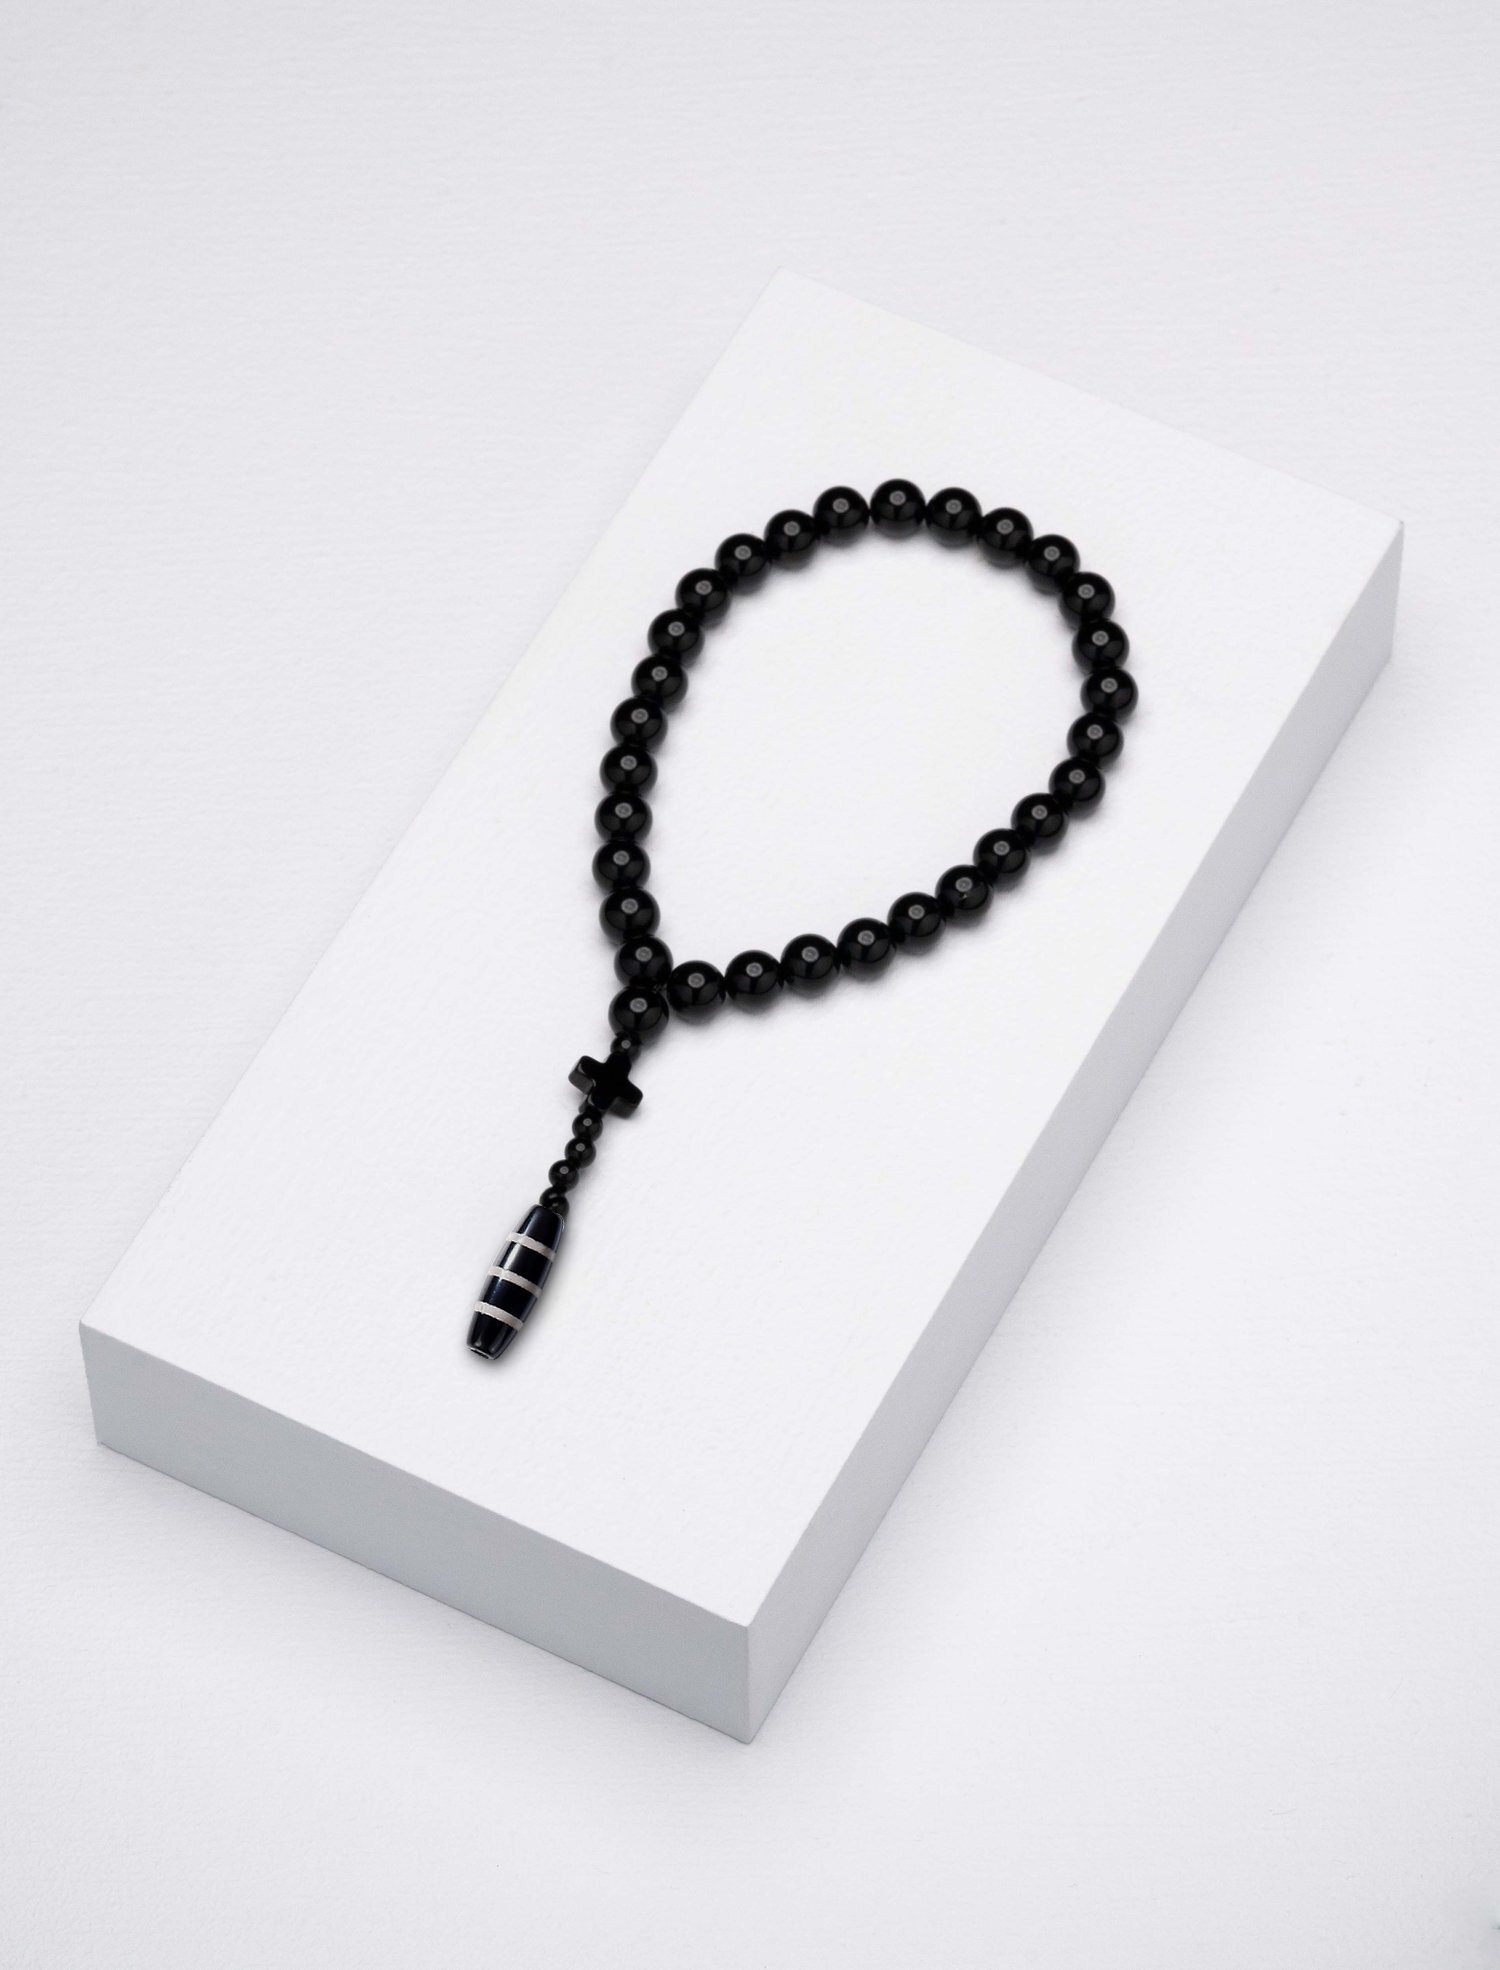 Beads Jock designed Caim Worry - Zonfrillo by Worry Beads Caim —